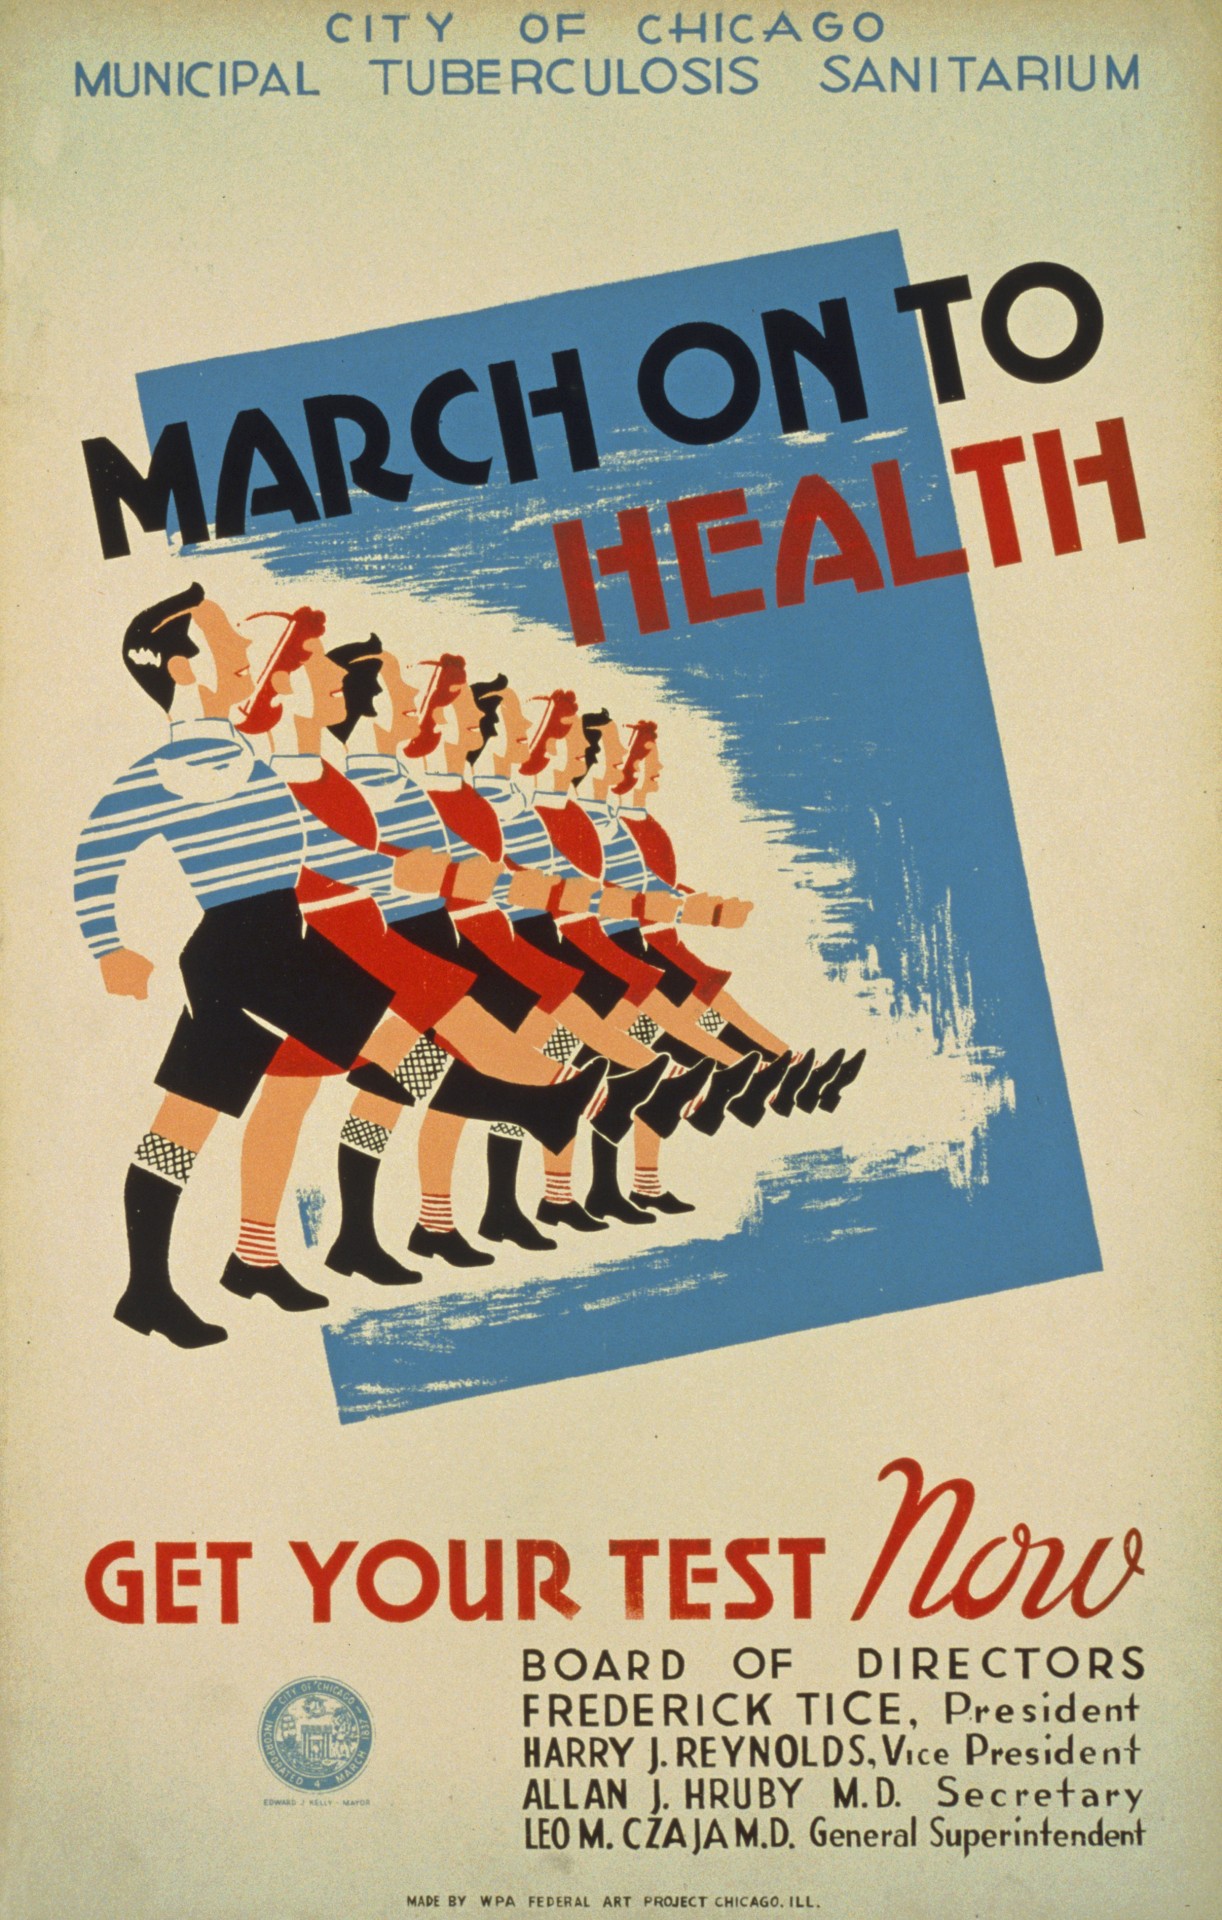 Vintage Health Test Poster